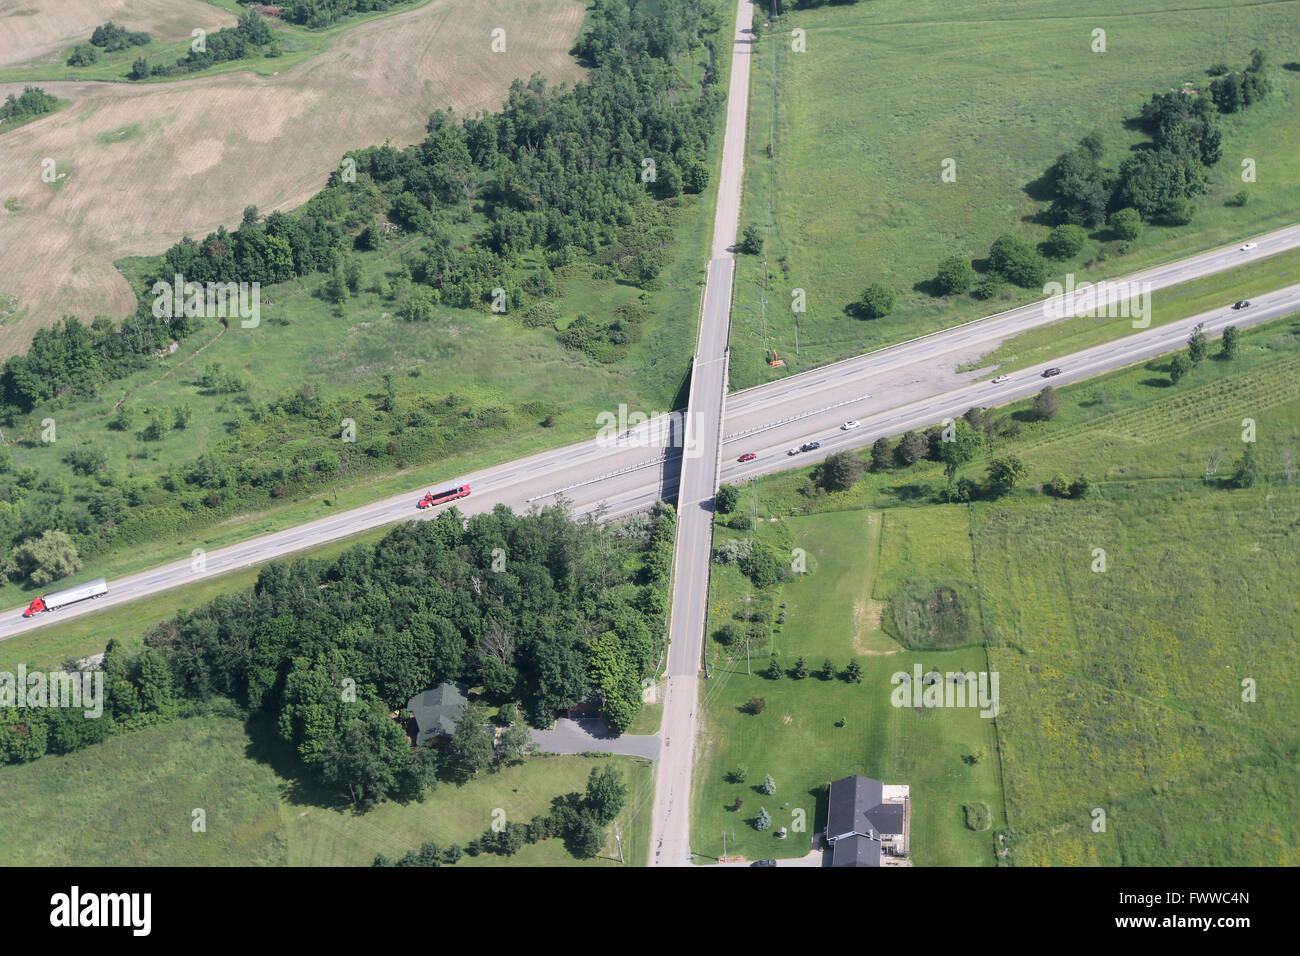 High 401 near Kingston, Ont., on June 28, 2014 Stock Photo